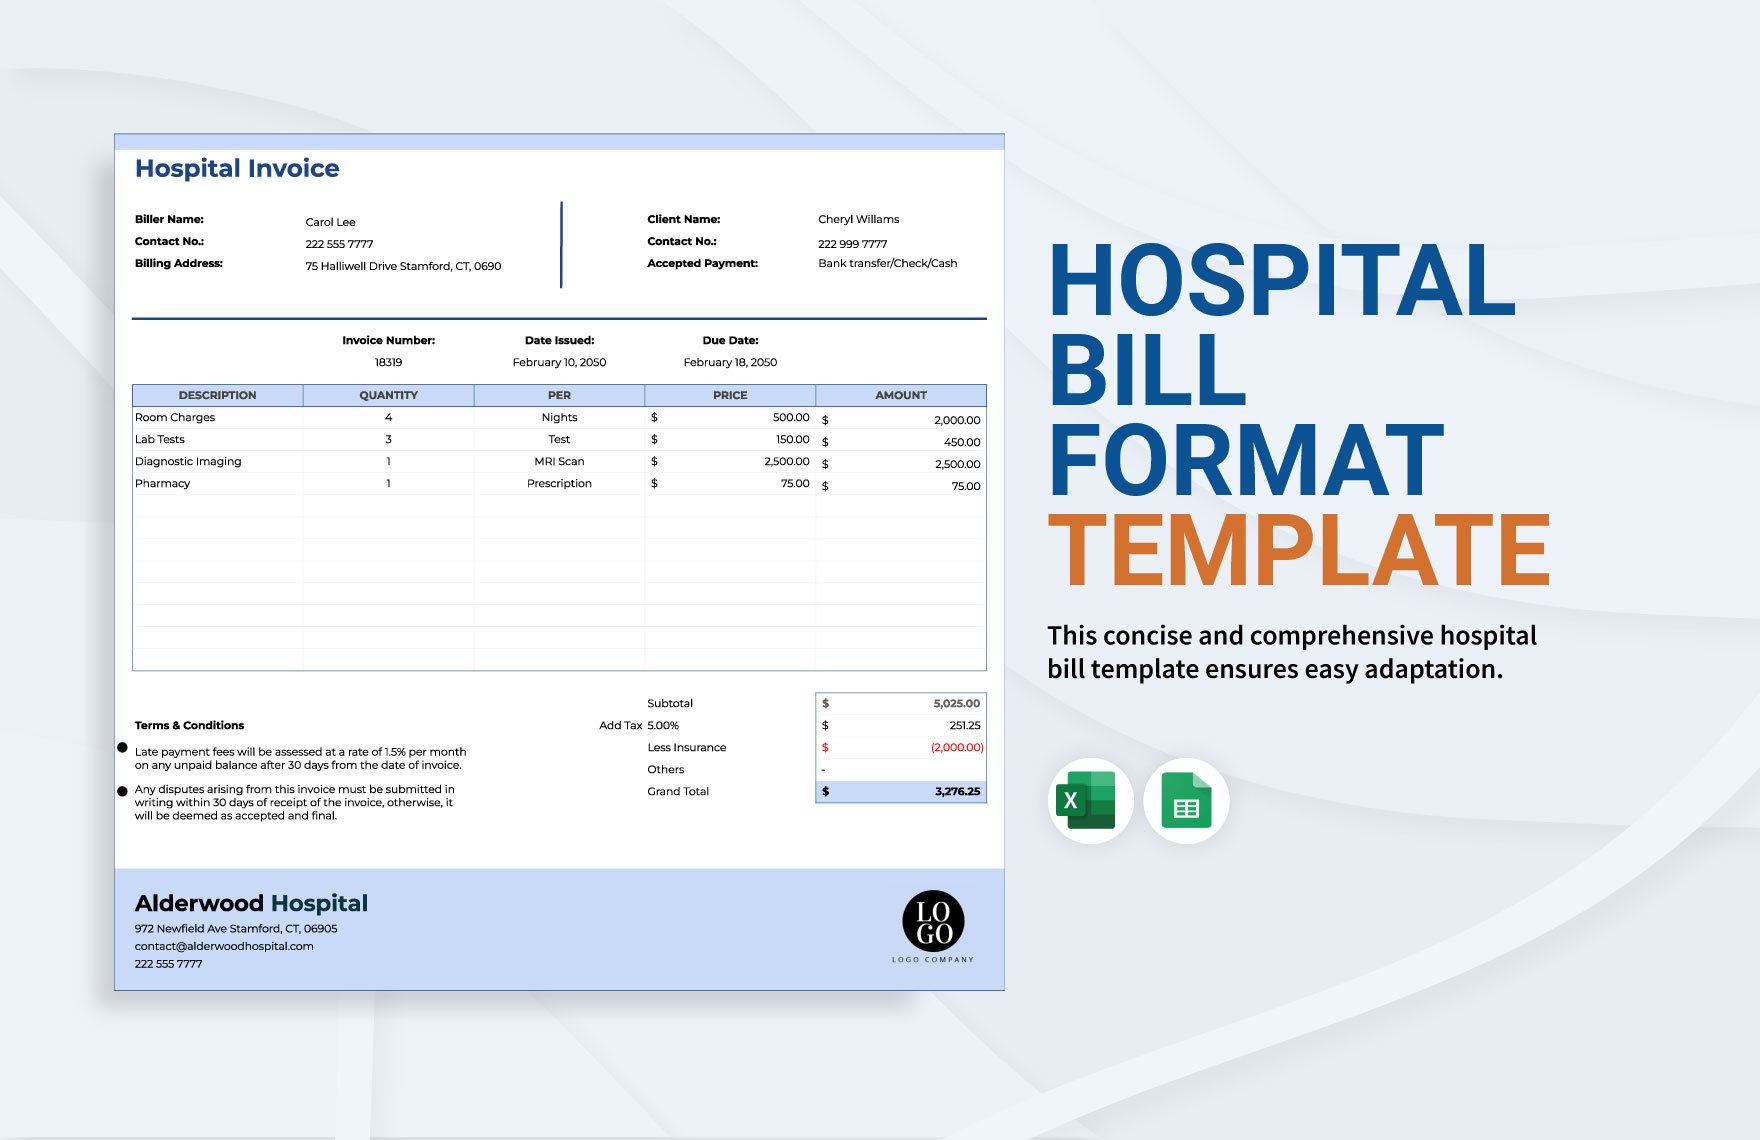 Hospital Bill Format Template